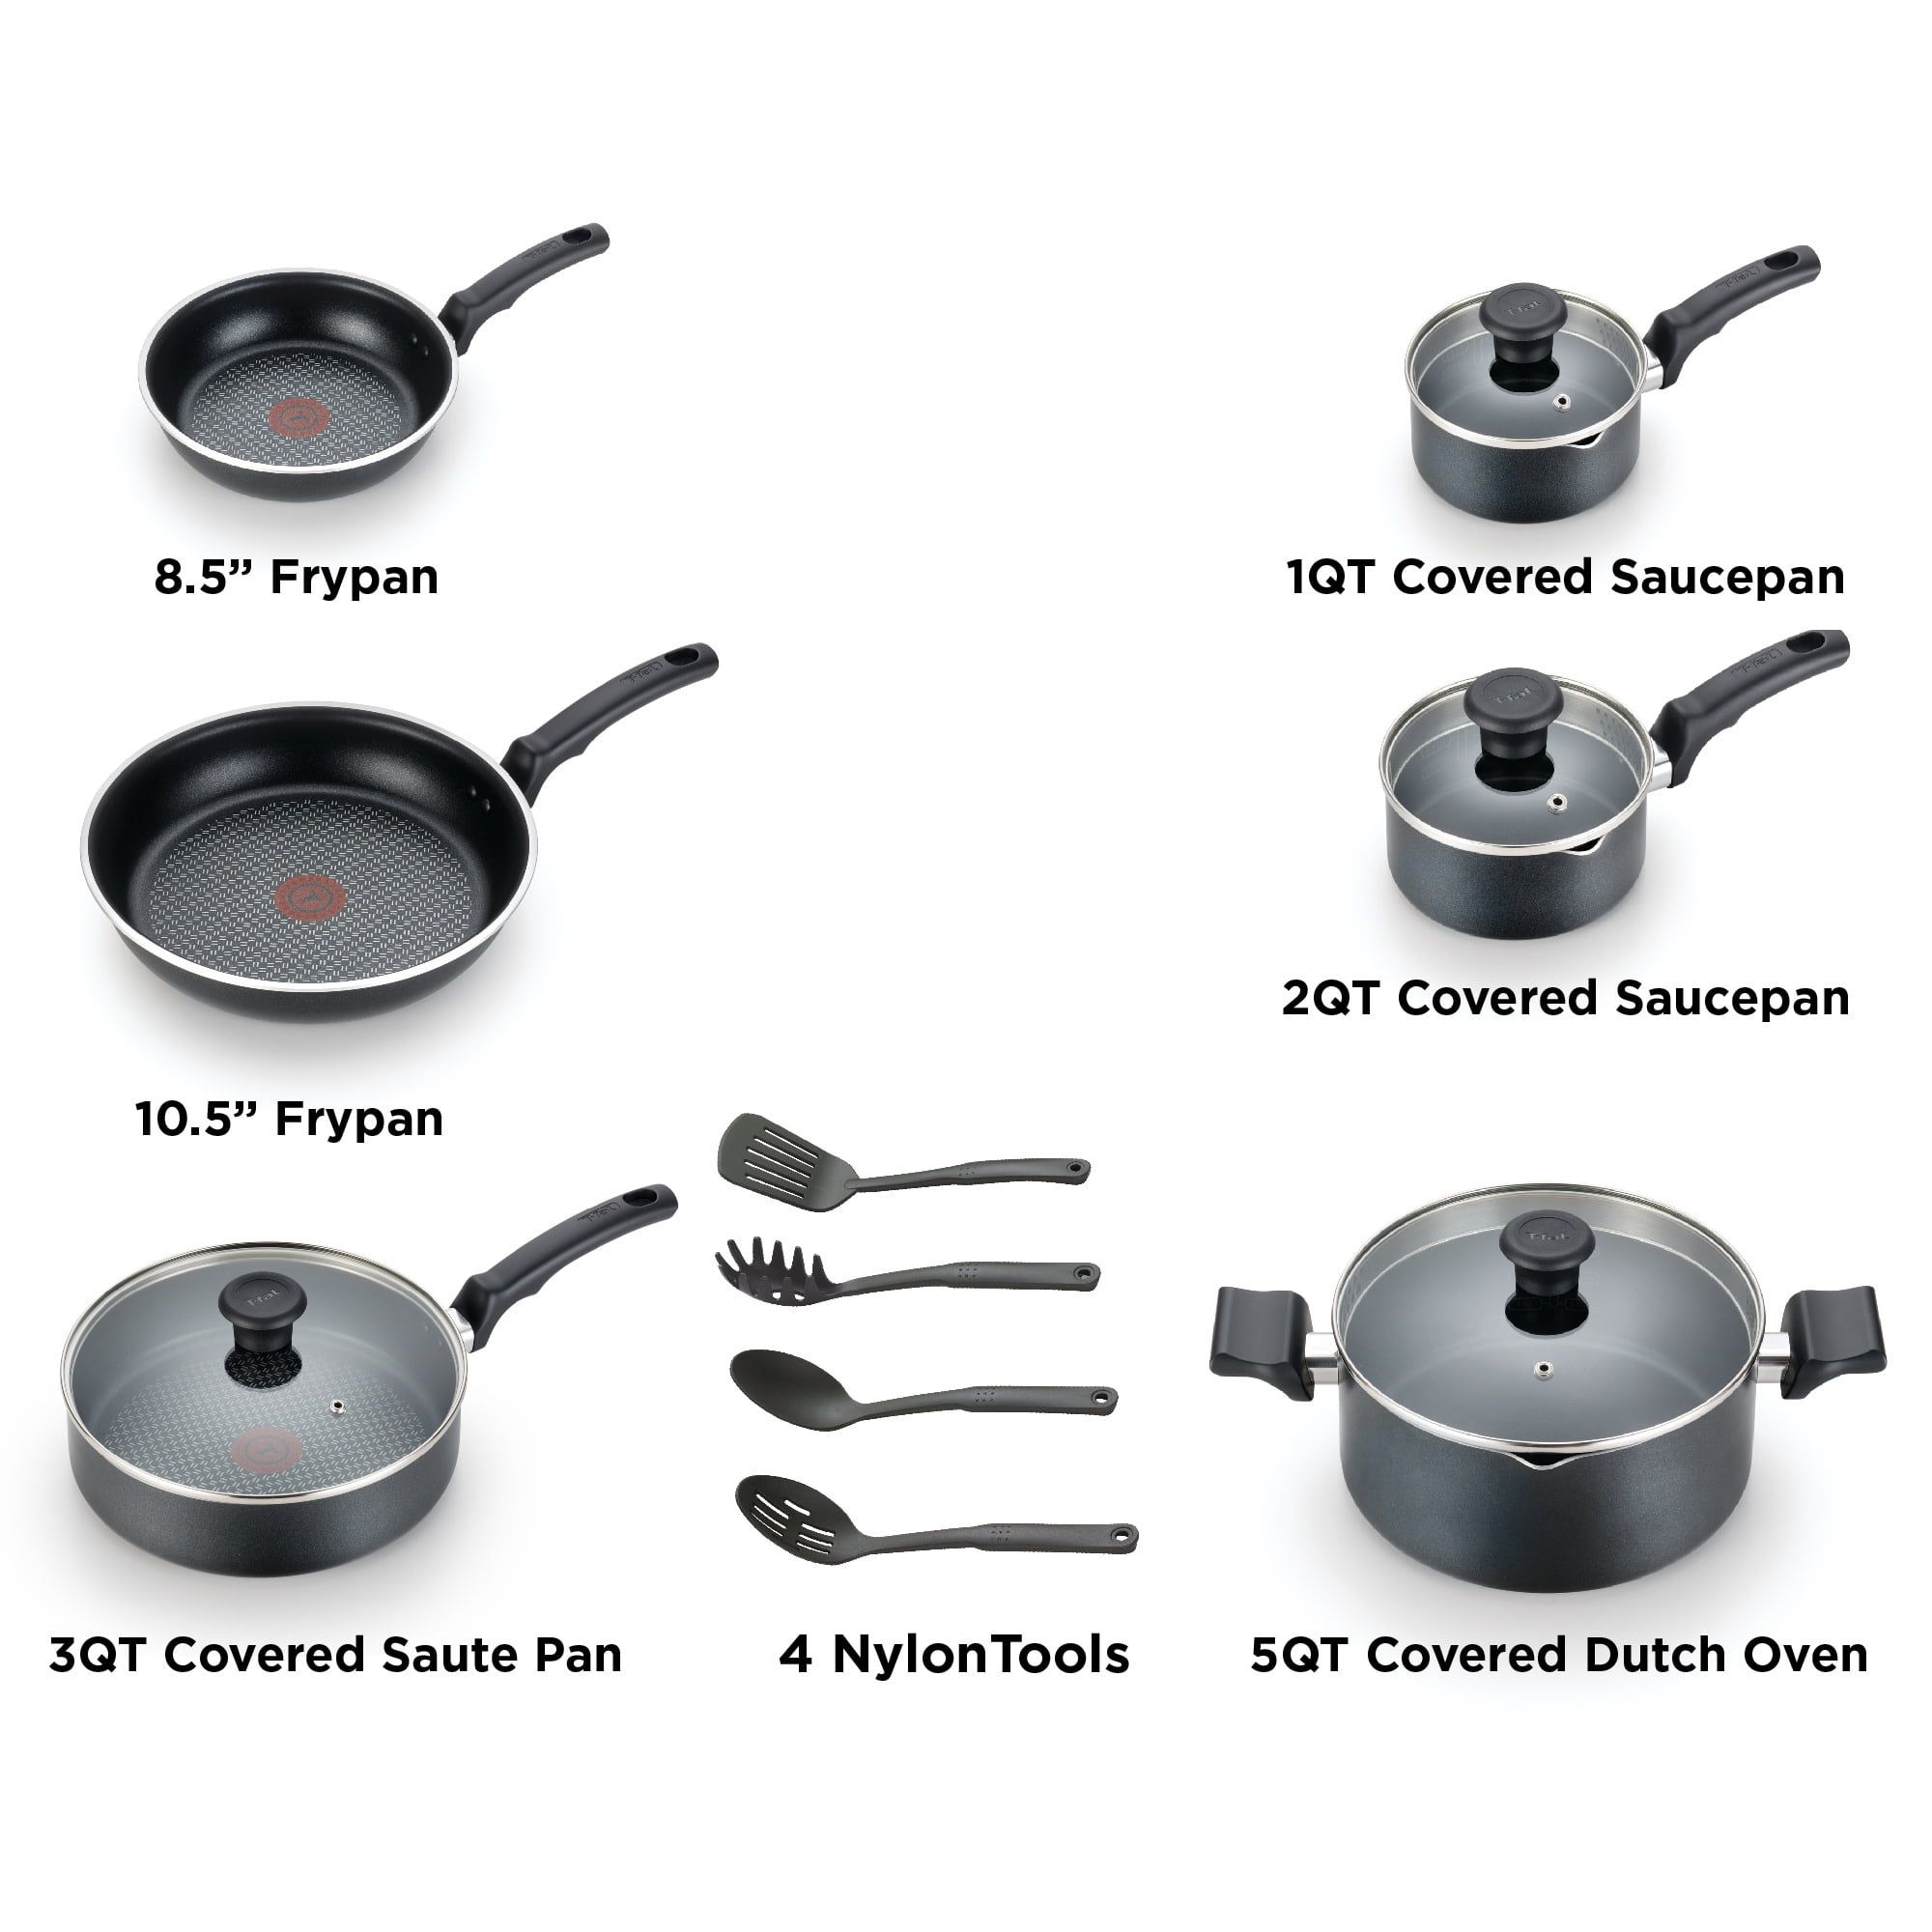 T Fal Comfort Fry Pan Set - 2 pans